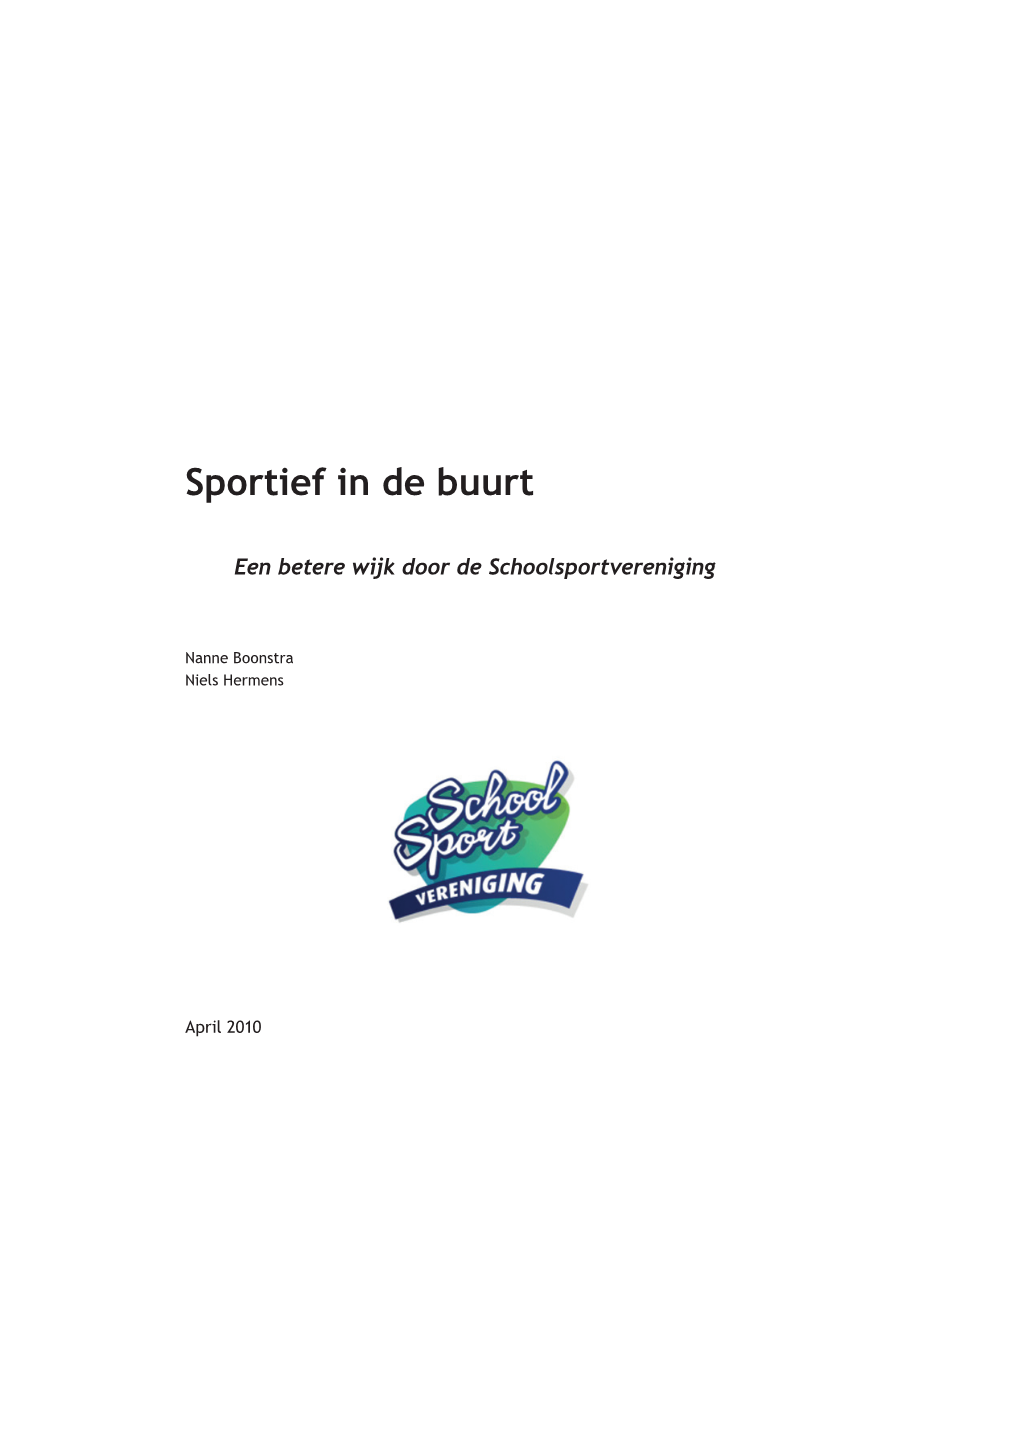 Sportief in De Buurt